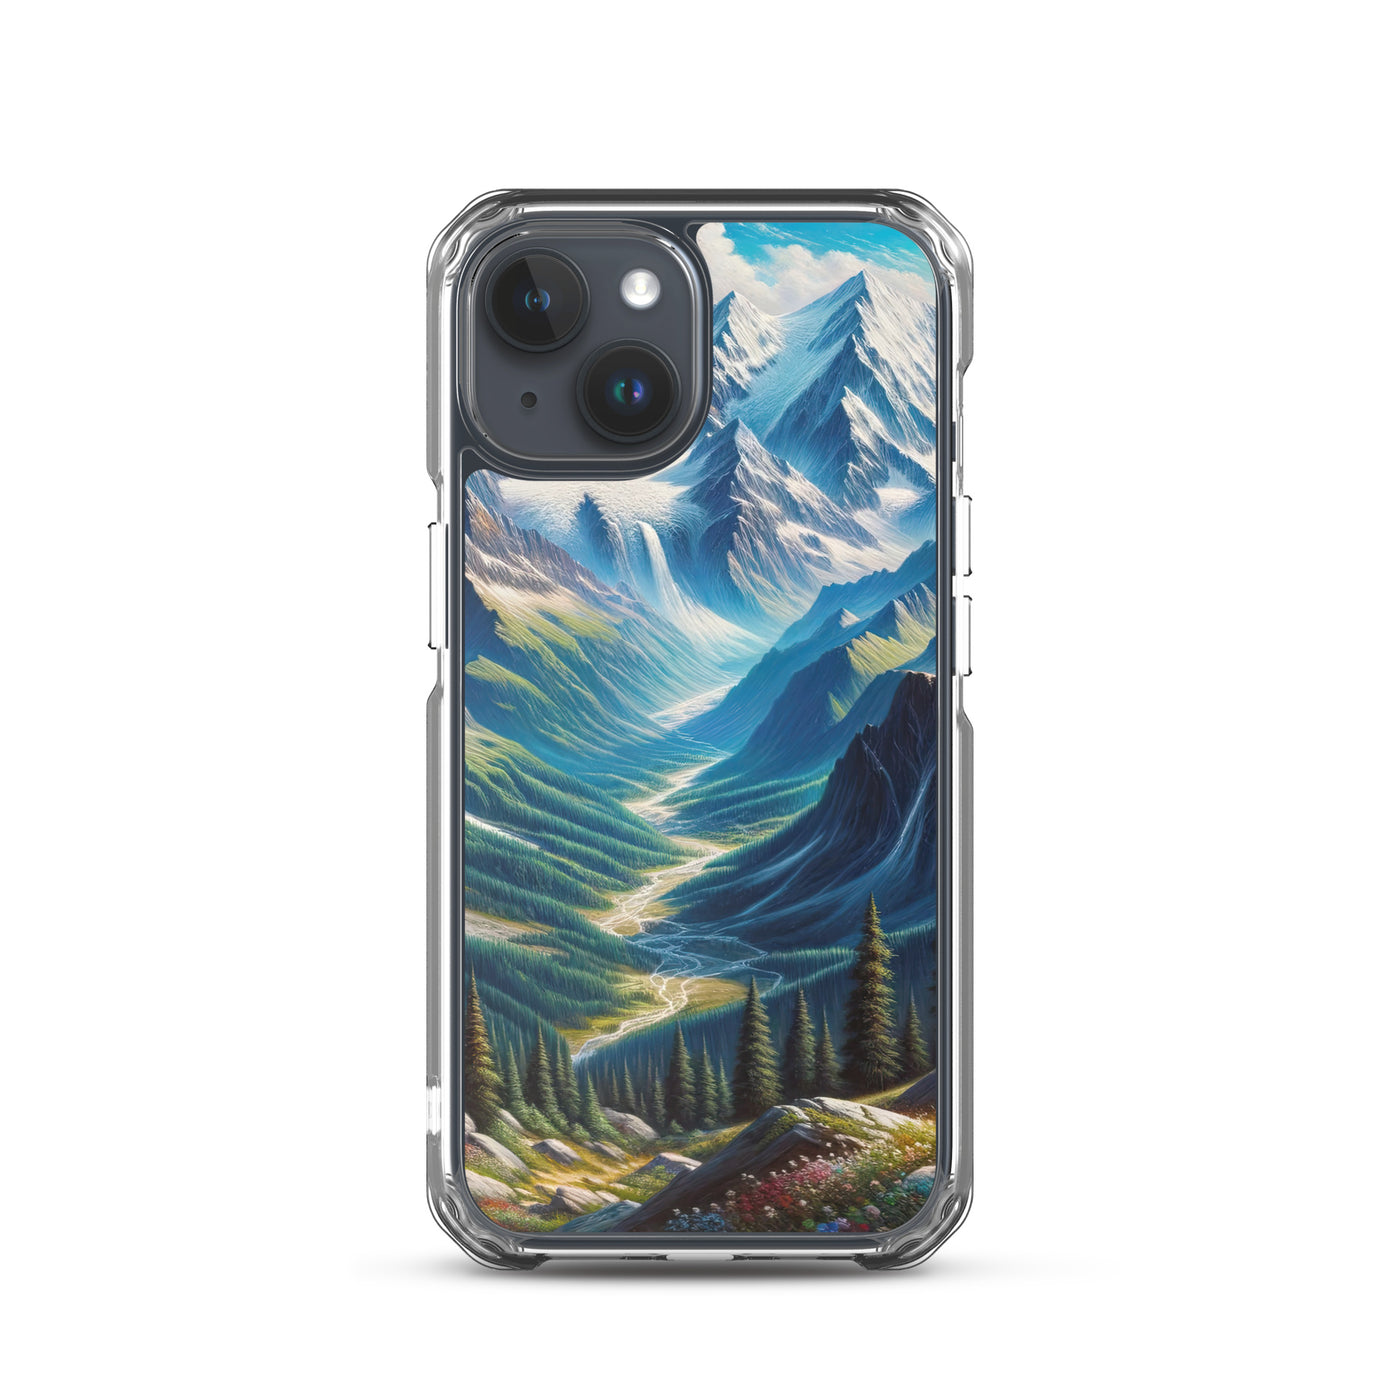 Panorama-Ölgemälde der Alpen mit schneebedeckten Gipfeln und schlängelnden Flusstälern - iPhone Schutzhülle (durchsichtig) berge xxx yyy zzz iPhone 15